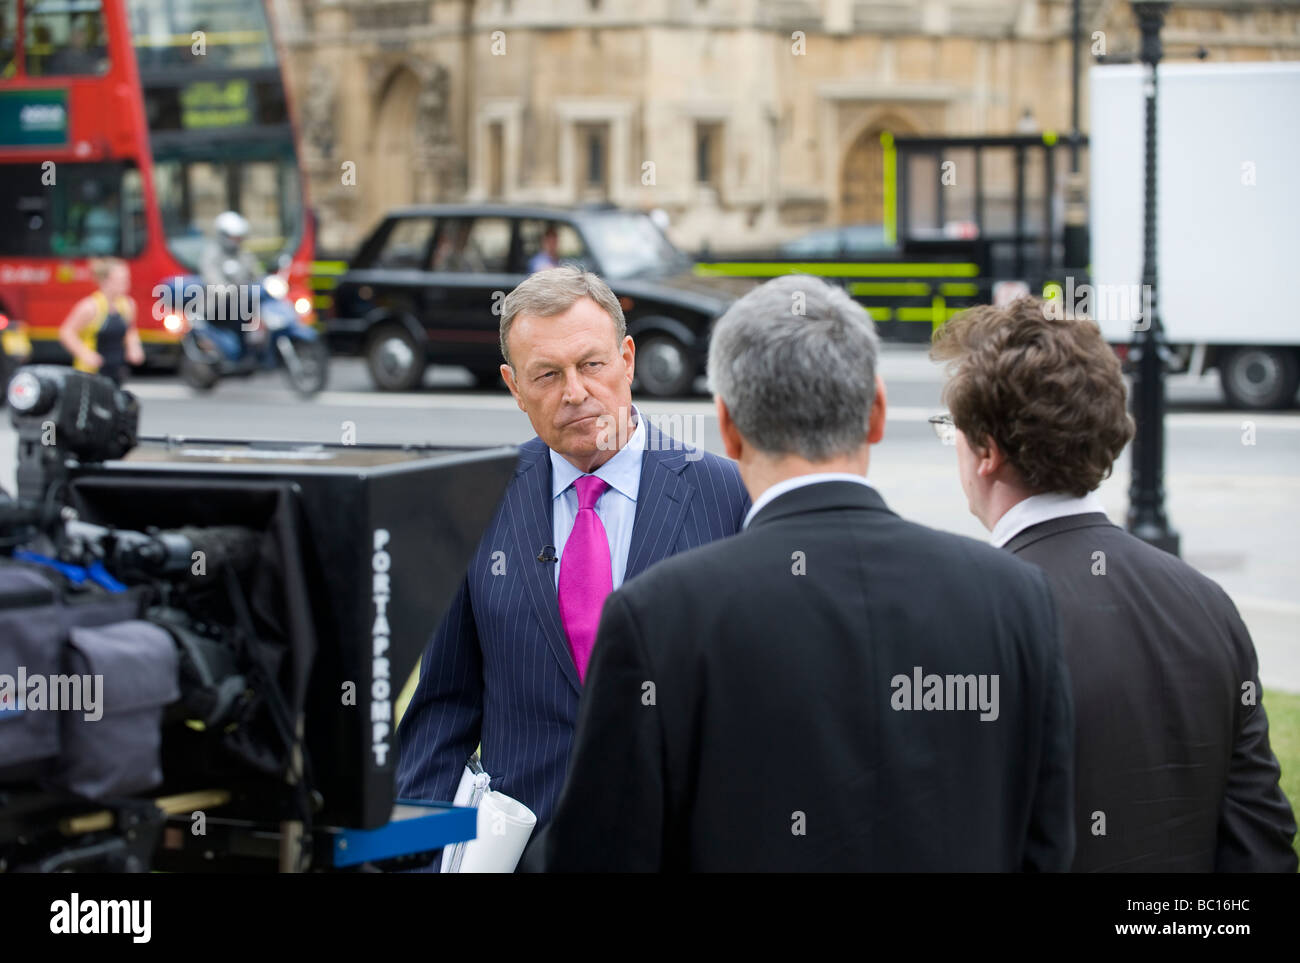 JEREMY Thompson de Sky News, configurado para transmitir en vivo desde el Parlamento verde durante el escándalo de los gastos, Londres, Reino Unido. Foto de stock